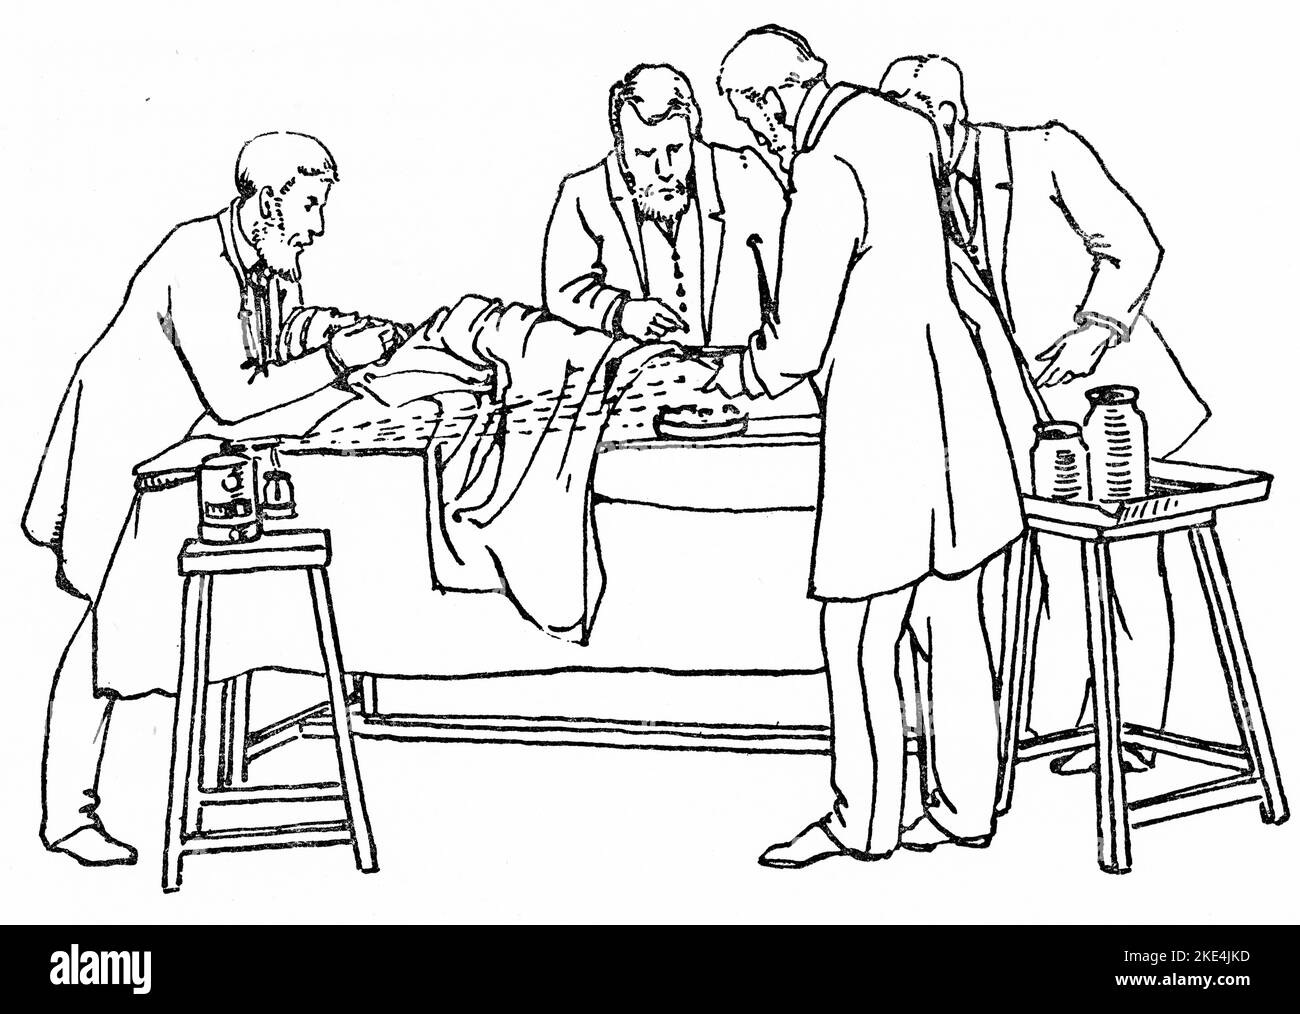 Betrieb von 1880 mit Lister Spray im Einsatz. Der karbolische Dampfsprühapparat von Joseph Lister war ein großer Fortschritt in der antiseptischen Chirurgie und wurde verwendet, um während der Operation eine 5-prozentige karbolische Säurelösung in Operationssälen zu sprühen. Joseph Lister (1827-1912) war ein britischer Chirurg, Medizinwissenschaftler, experimenteller Pathologe und ein Pionier der antiseptischen Chirurgie und Präventivmedizin. Aus „Antiseptische Chirurgie: Seine Prinzipien, Praxis, Geschichte und Ergebnisse“ von William Watson Cheyne (1852-1932). Stockfoto